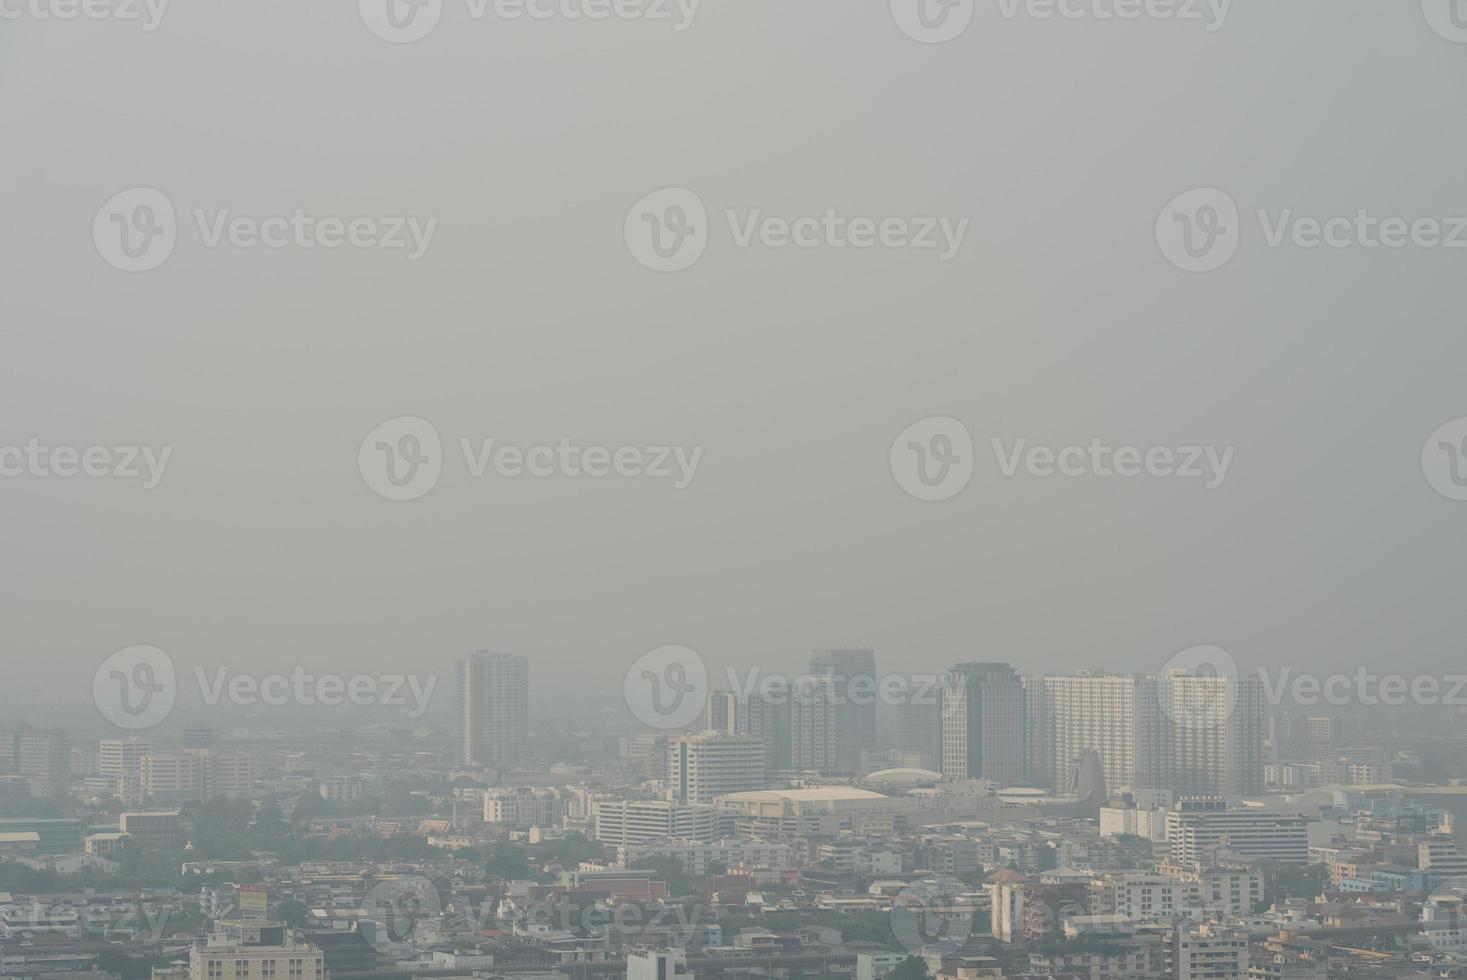 lucht verontreiniging en pm2.5 bovenstaand gevaarlijk niveau in Bangkok Thailand foto